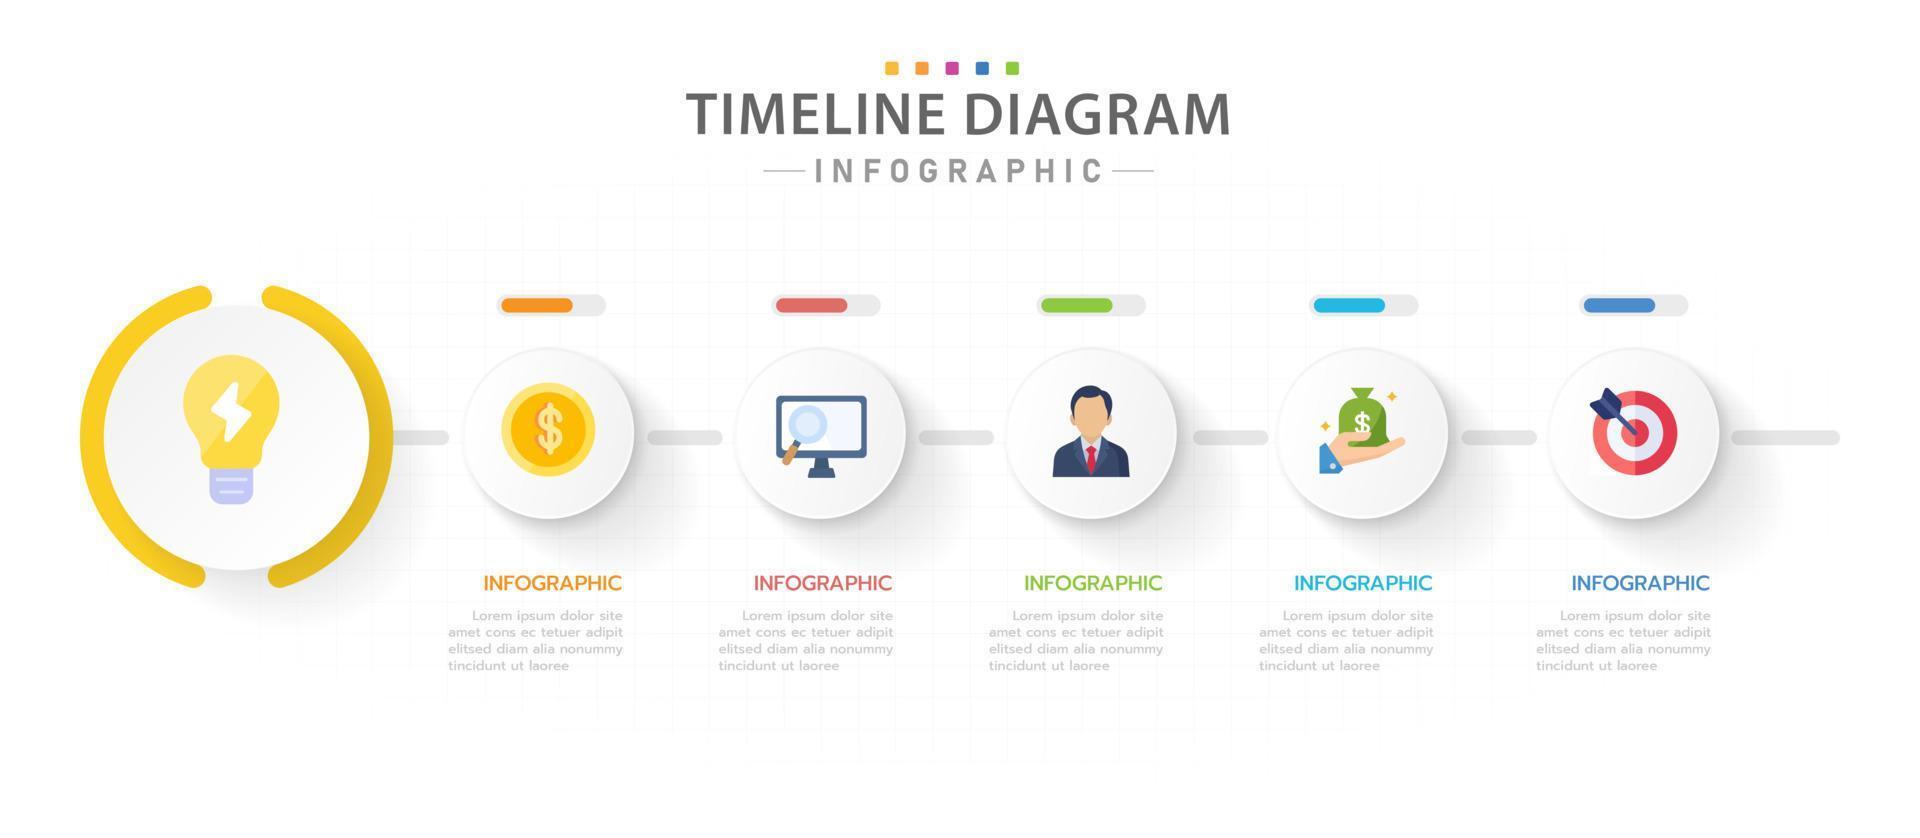 modèle d'infographie pour les entreprises. Diagramme de chronologie moderne en 5 étapes avec sujet circulaire et barre de progression, infographie vectorielle de présentation. vecteur